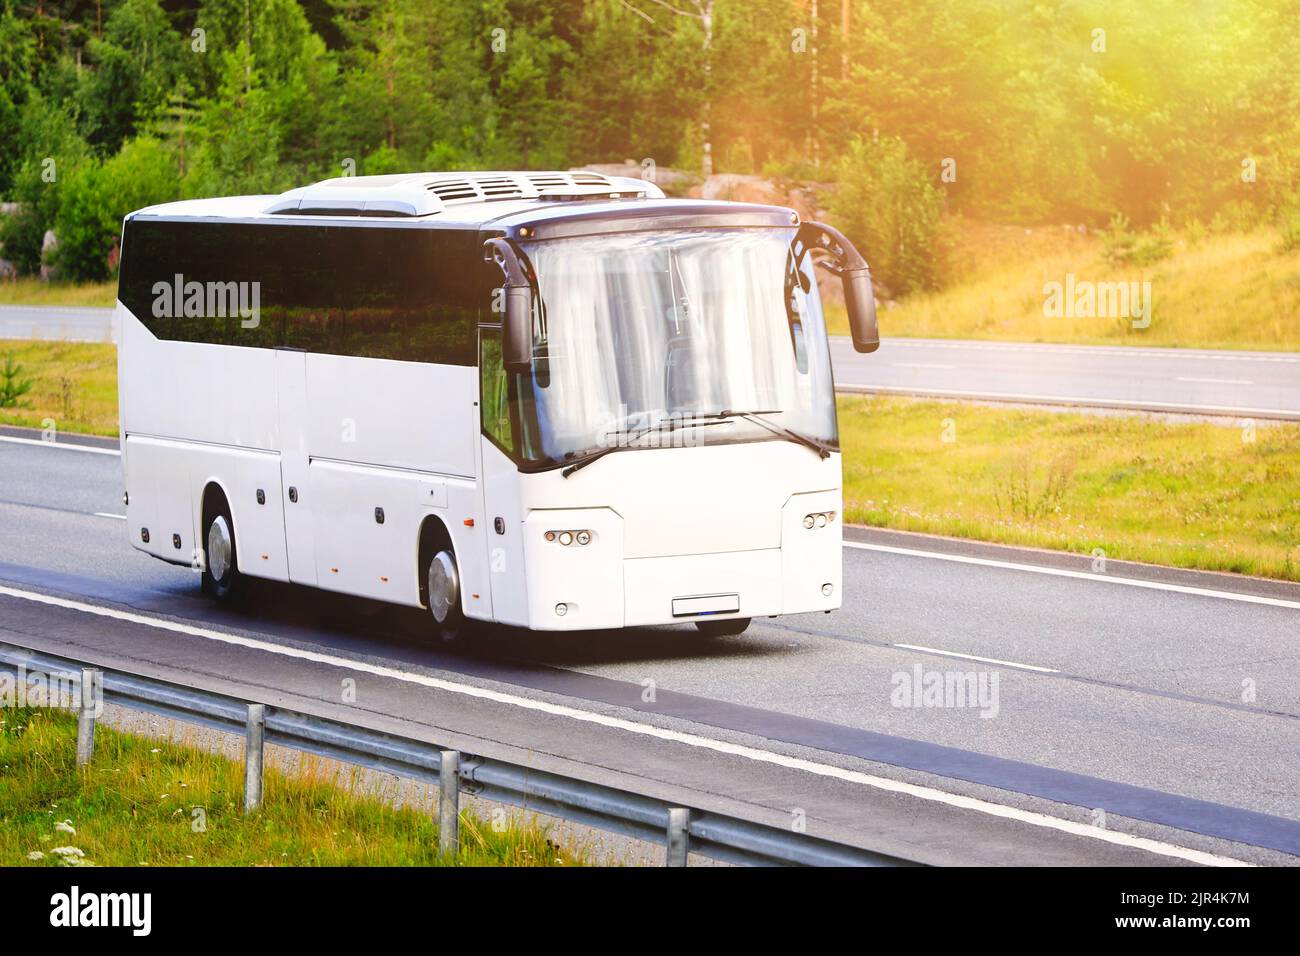 Weißer Reisebus, der morgens mit hoher Geschwindigkeit auf der Autobahn in Richtung goldenem Sonnenlicht fährt. Keine Personen, kopieren Sie Speicherplatz rechts vom Bild. Stockfoto